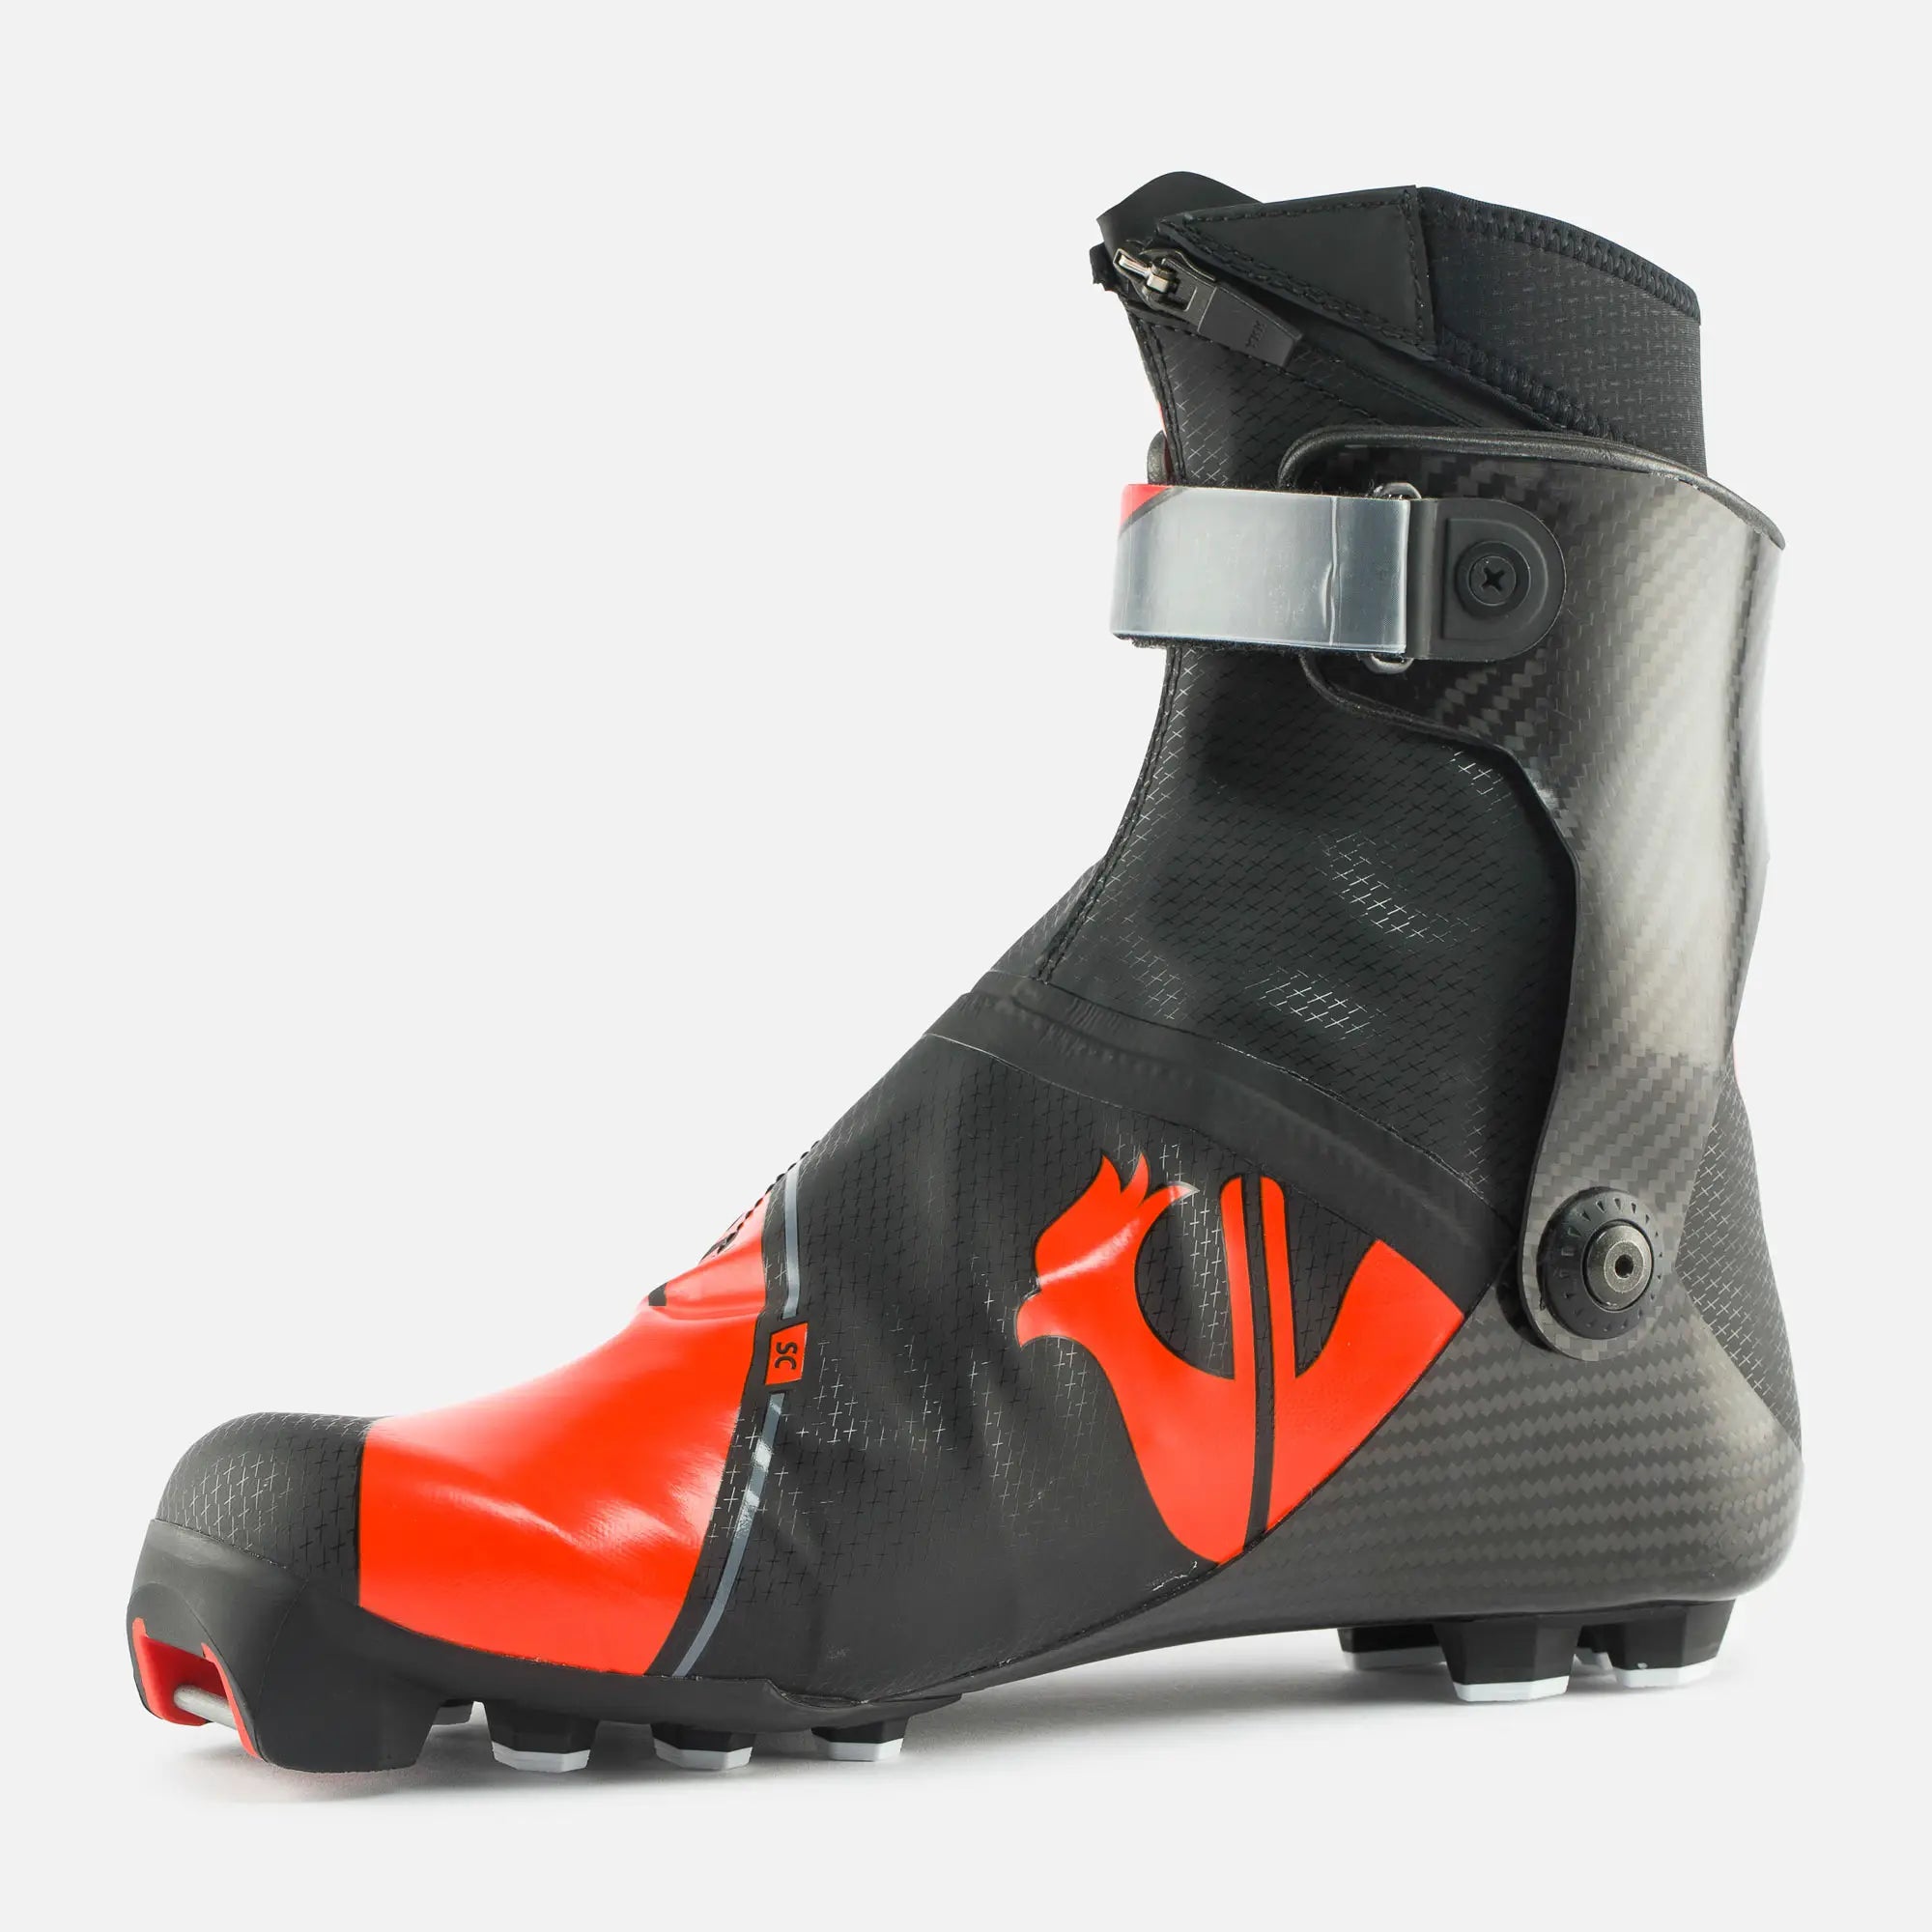 Rossignol X-ium Carbon Premium+ Skate - Pioneer Midwest